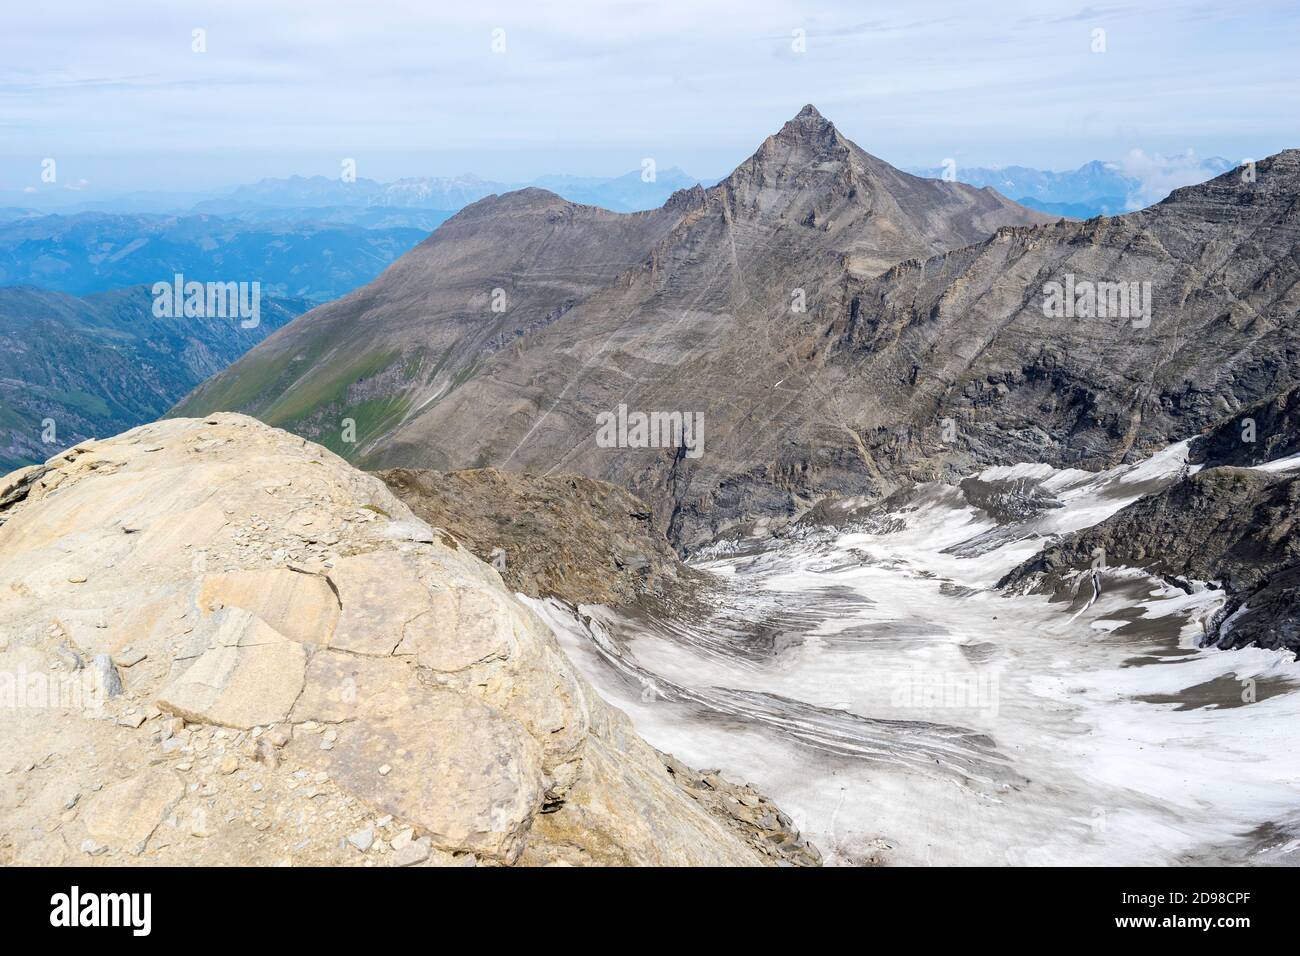 View from Kaindlgrat towards Hoher Tenn (3368 m), Austria Stock Photo